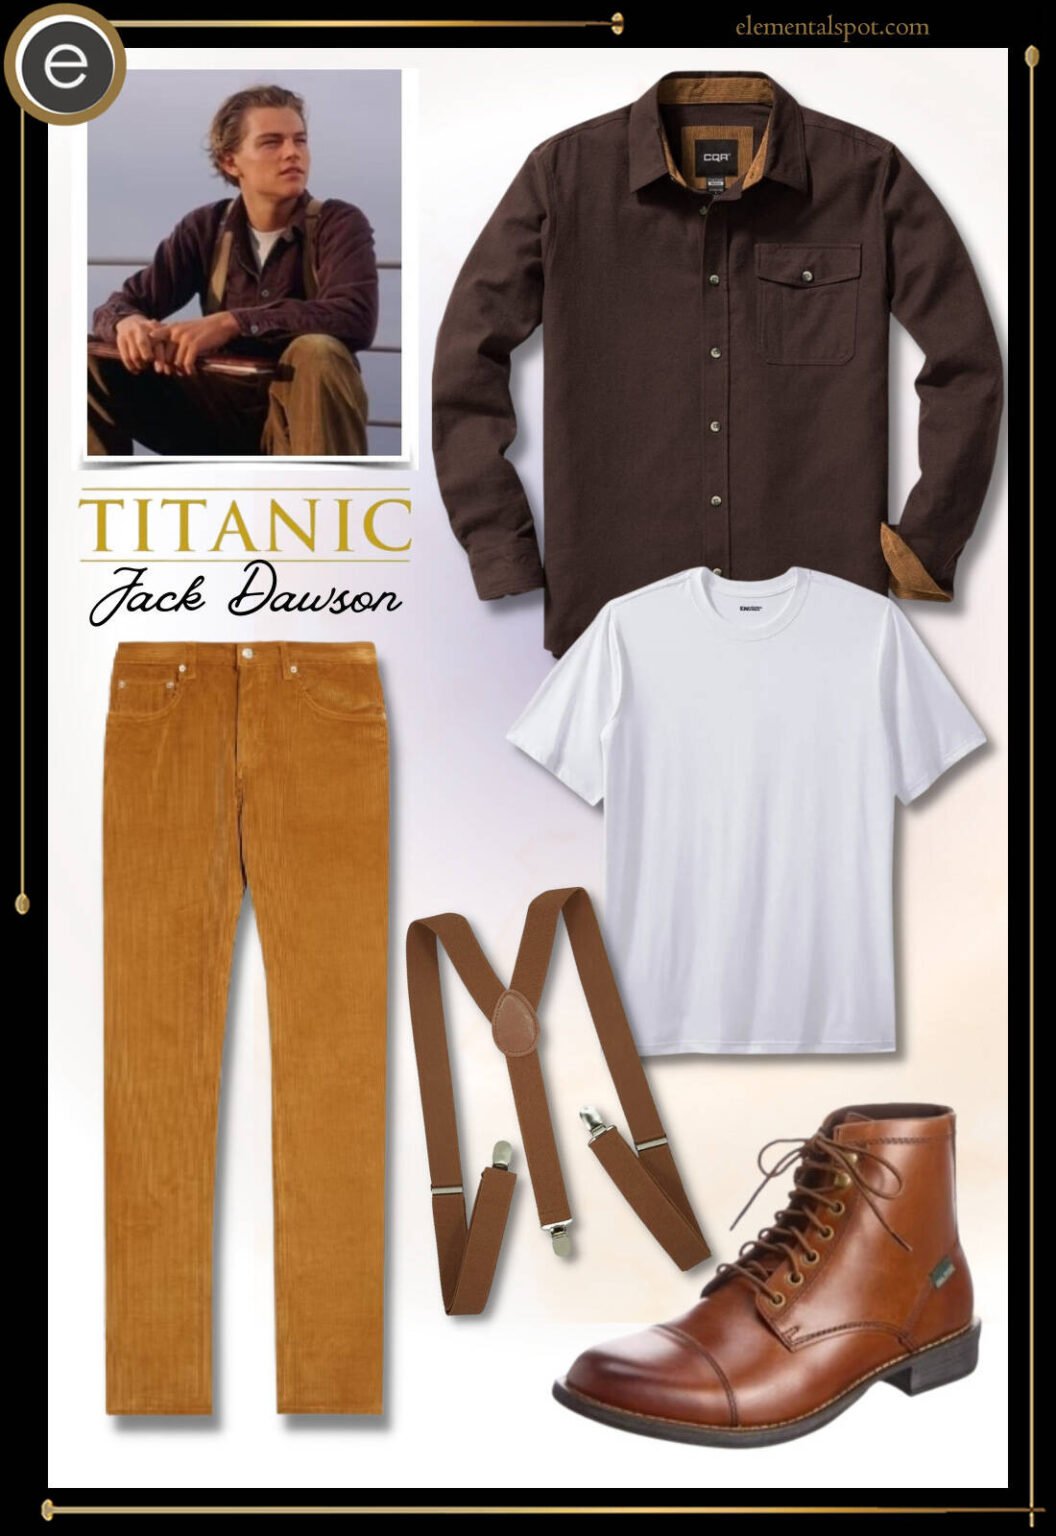 Dress Up Like Jack Dawson from Titanic - Elemental Spot